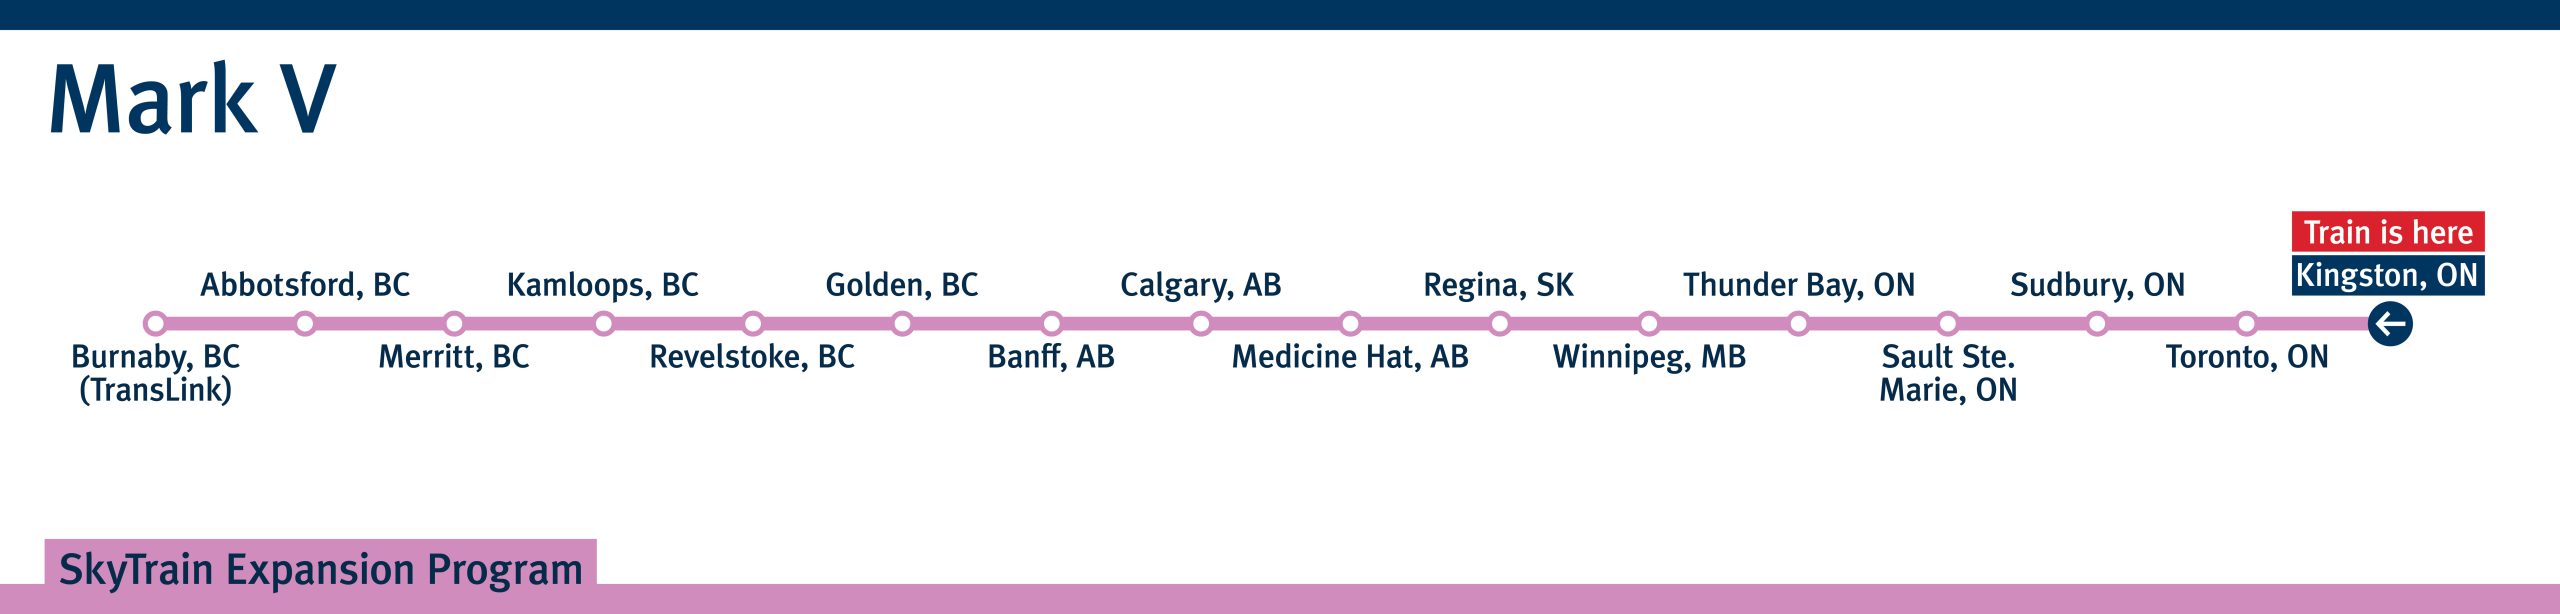 Mark V SkyTrain travel map from Kingston, Ontario to Burnaby, BC